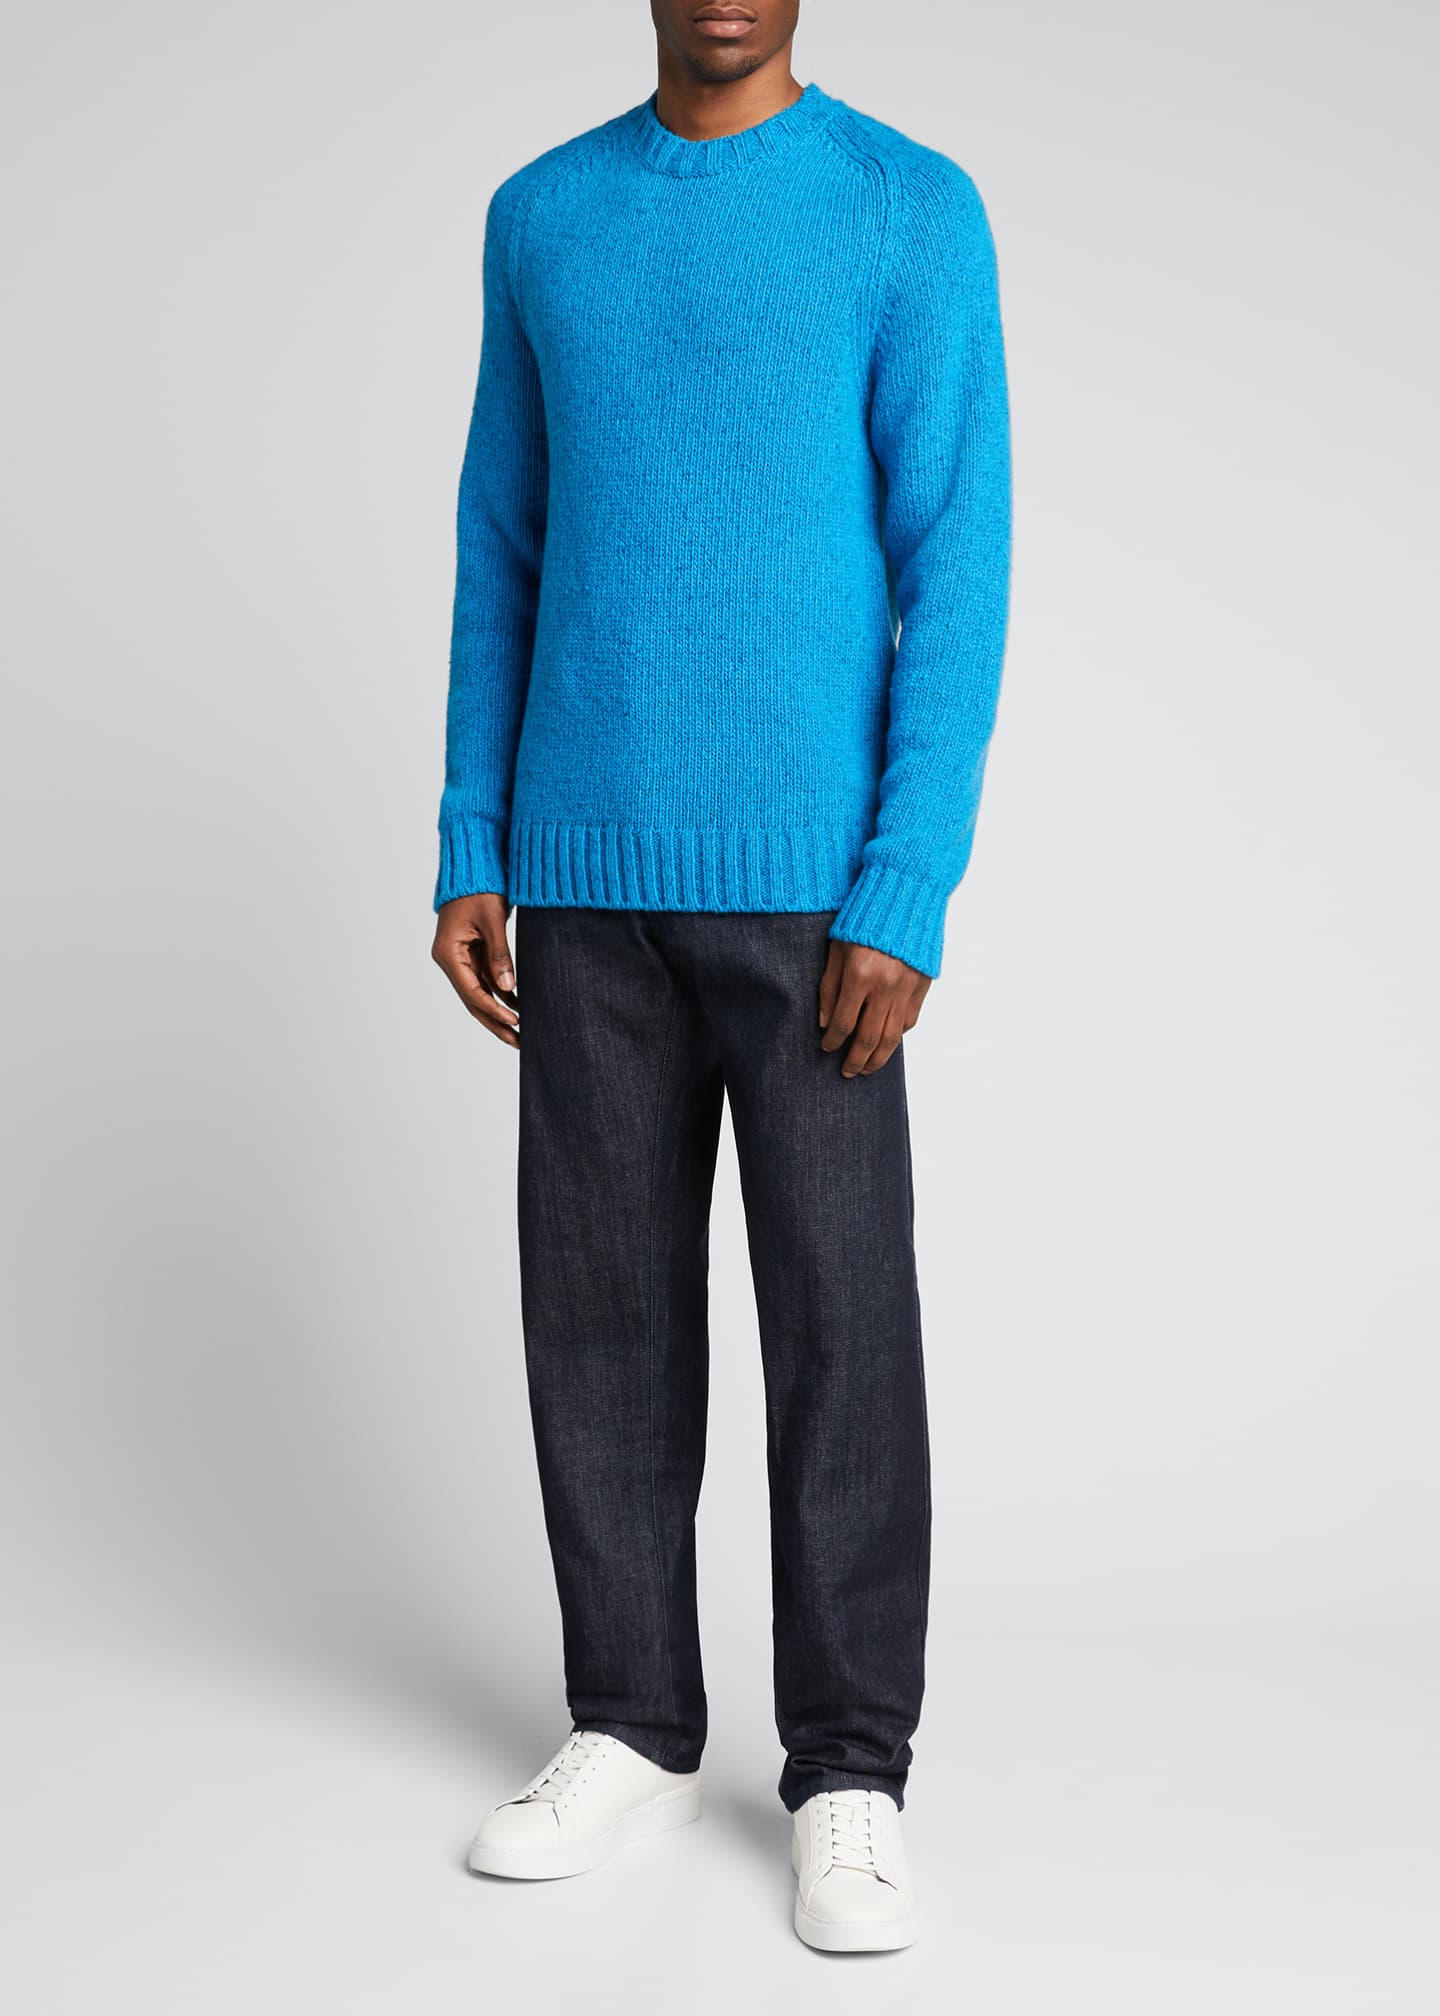 Gabriela Hearst Men's Juan Knit Cashmere Sweater - Bergdorf Goodman